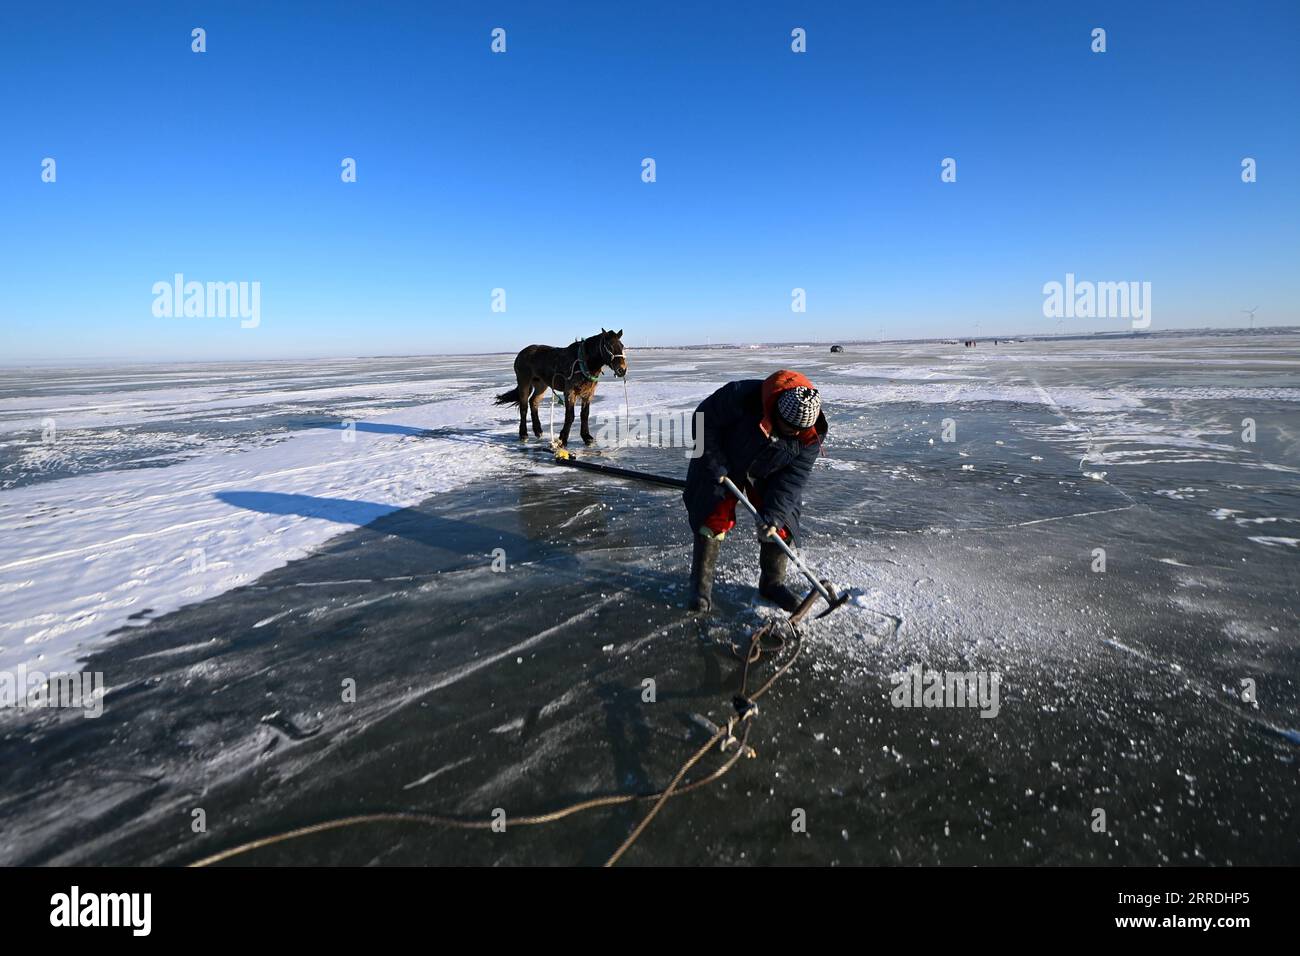 211227 -- SONGYUAN, 27 dicembre 2021 -- Un pescatore si prepara a raccogliere il pesce sul lago Chagan nella città di Songyuan, provincia di Jilin della Cina nordorientale, 26 dicembre 2021. Per secoli, pescatori e donne che vivono sul lago hanno mantenuto viva la tradizione della pesca sul ghiaccio -- perforando a mano attraverso il ghiaccio spesso e mettendo reti sotto per pescare. La tecnica è stata elencata come una forma a livello nazionale di patrimonio culturale immateriale. CHINA-JILIN-SONGYUAN-CHAGAN LAKE-WINTER FISHING CN YANXLINYUN PUBLICATIONXNOTXINXCHN Foto Stock